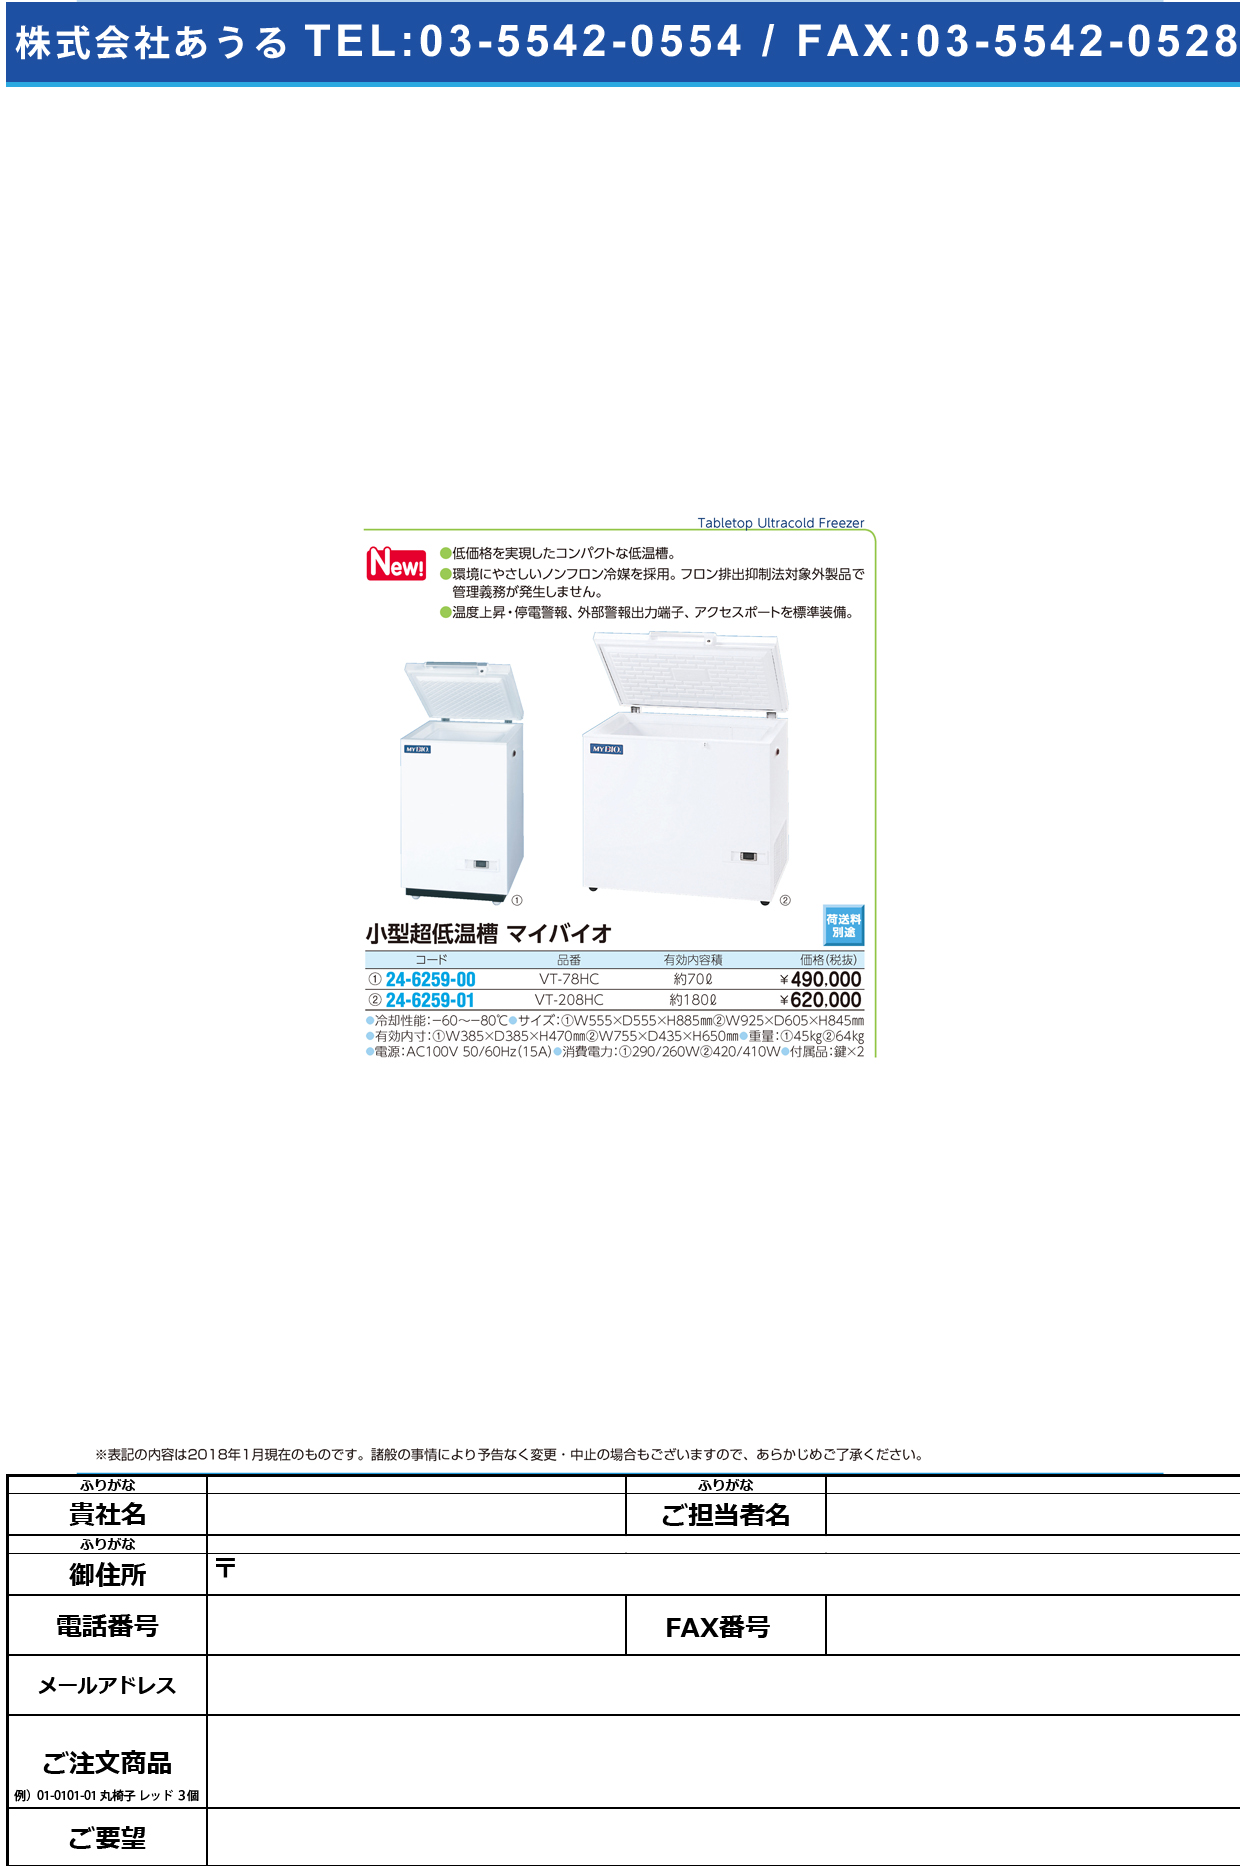 (24-6259-00)小型低温槽マイバイオ VT-78HC(70L) ｺｶﾞﾀﾃｲｵﾝｿｳﾏｲﾊﾞｲｵ(日本フリーザー)【1台単位】【2018年カタログ商品】